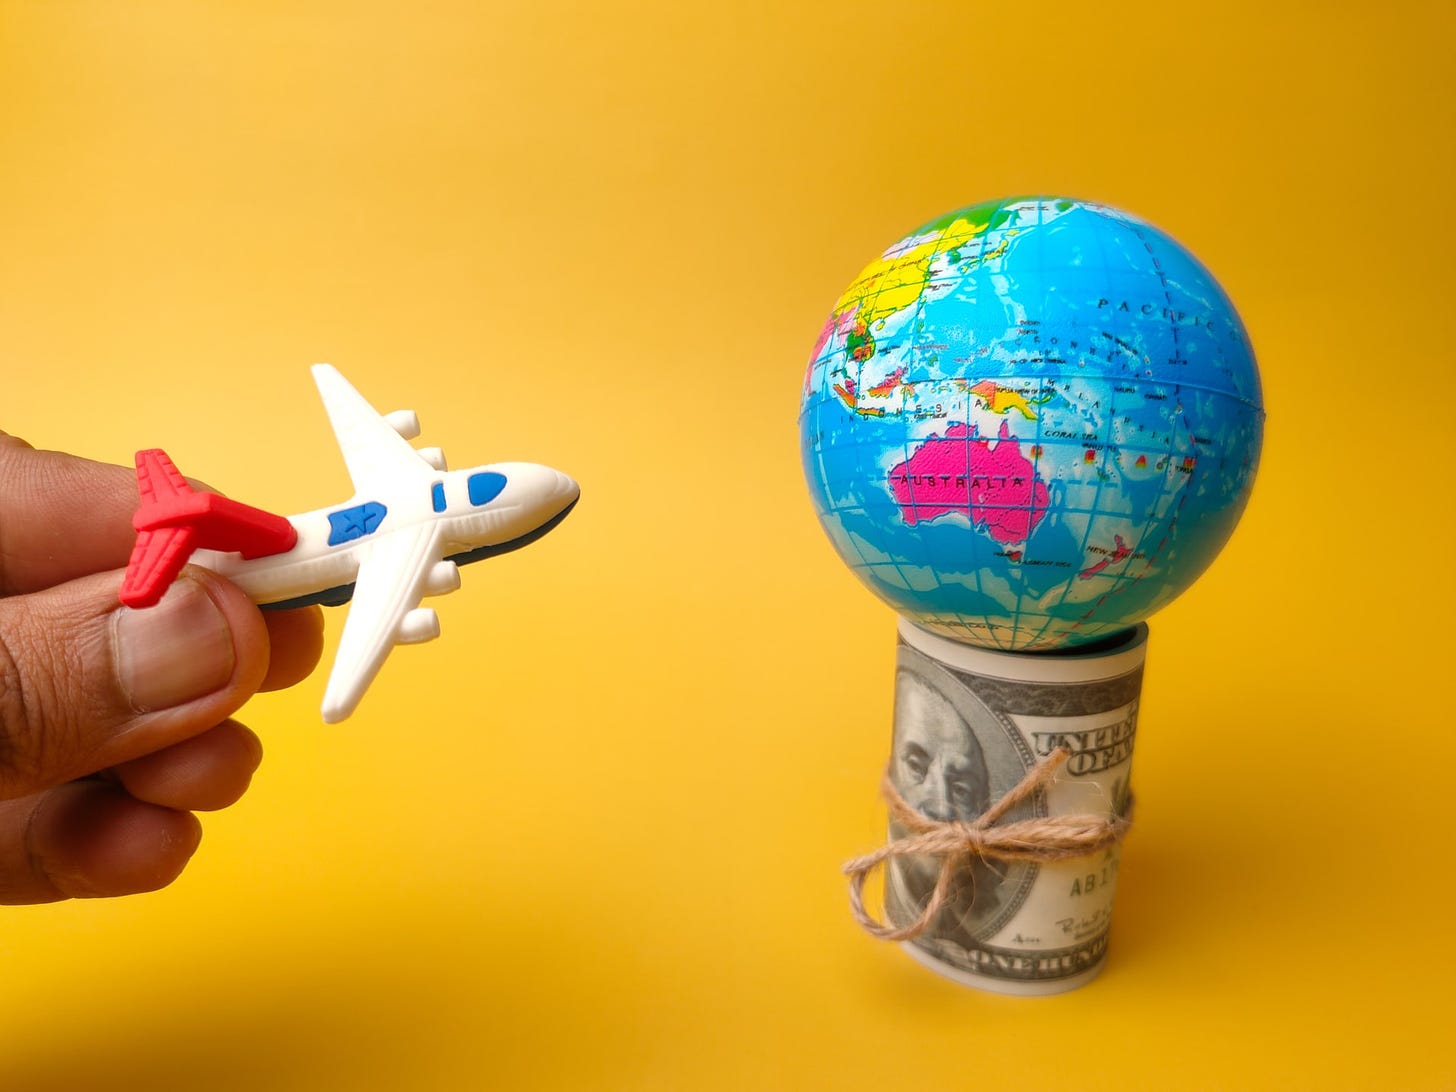 Foto de avião de brinquedo na mão de uma pessoa se aproximando de um pequeno globo colocado em cima de um maço de dinheiro, em um fundo amarelo.